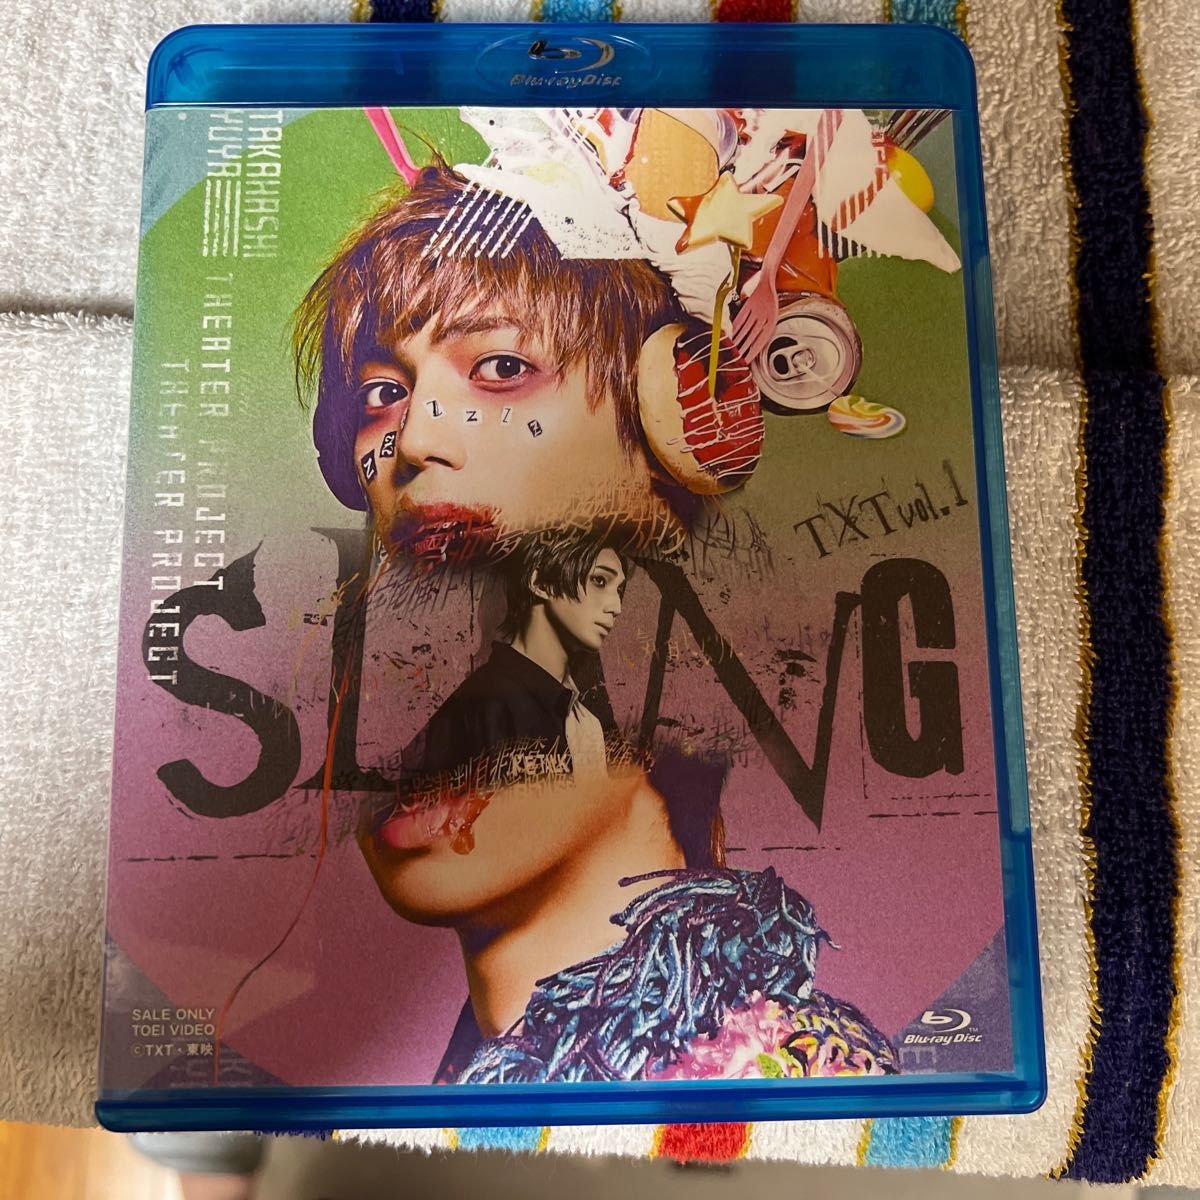 TXT vol.1 「SLANG」 (Blu-ray Disc) BD 有澤樟太郎